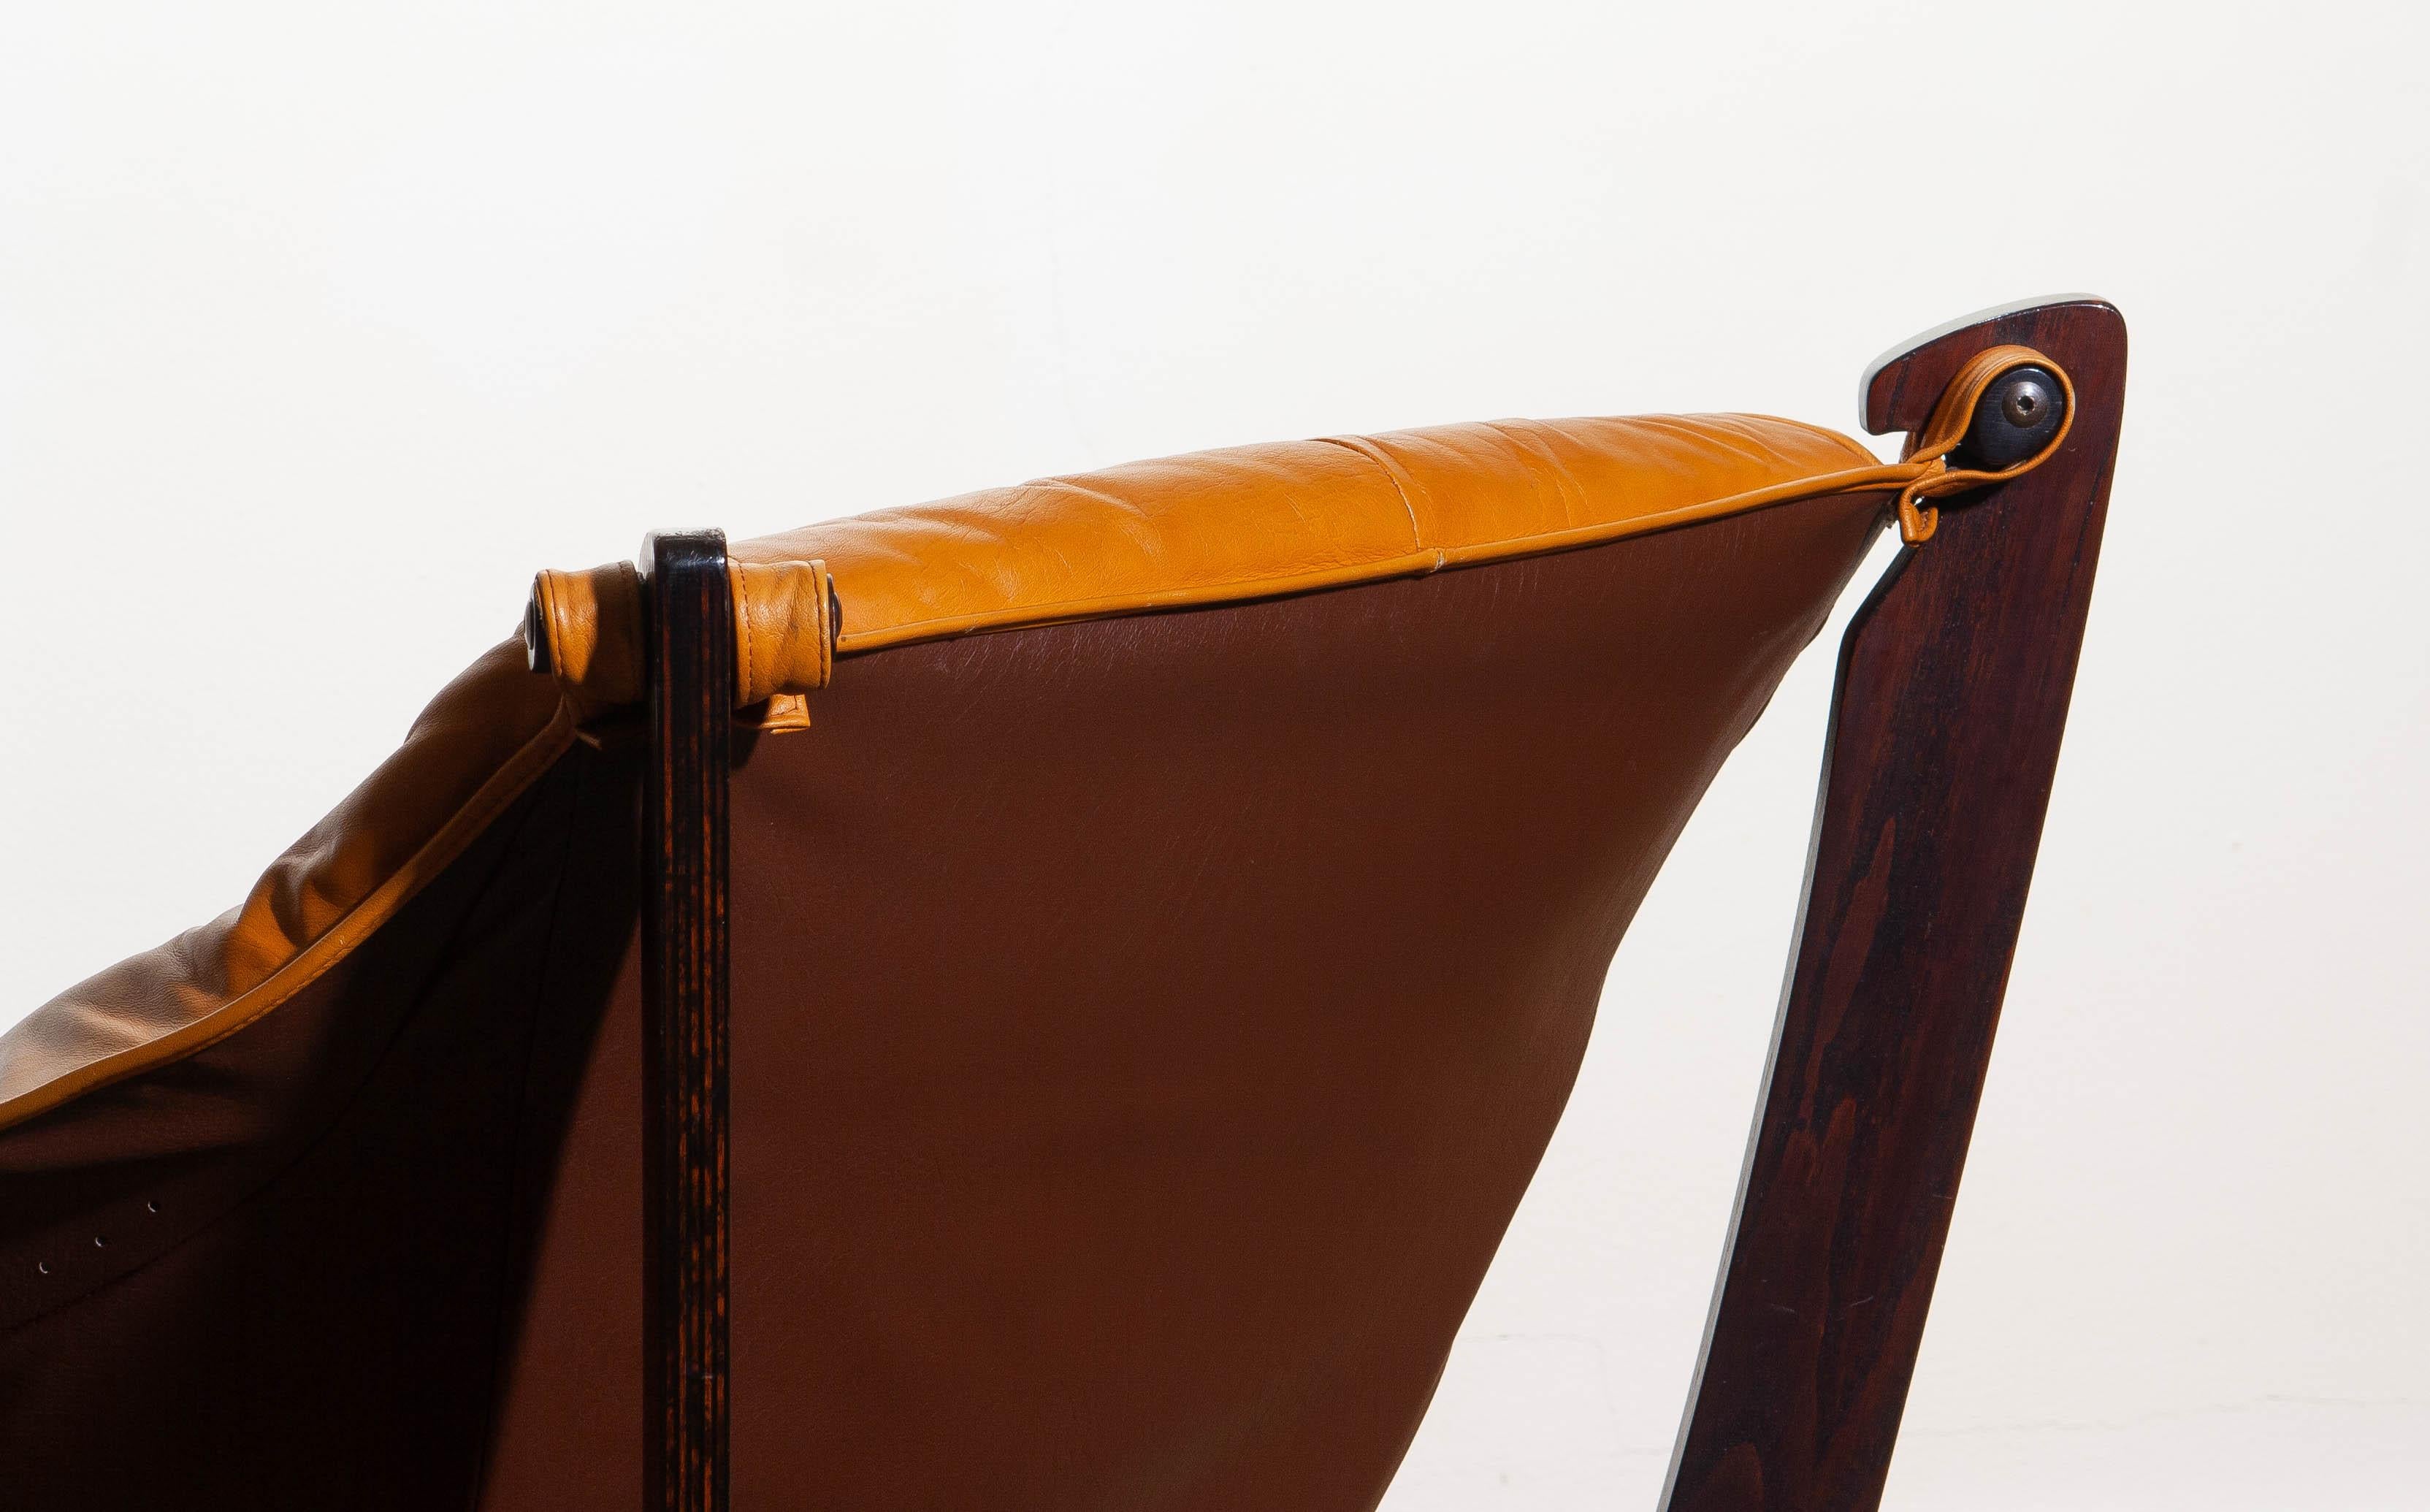 Beech 1970, Camel / Cognac Leather Lounge Chair by Odd Knutsen for Hjellegjerde Møbler